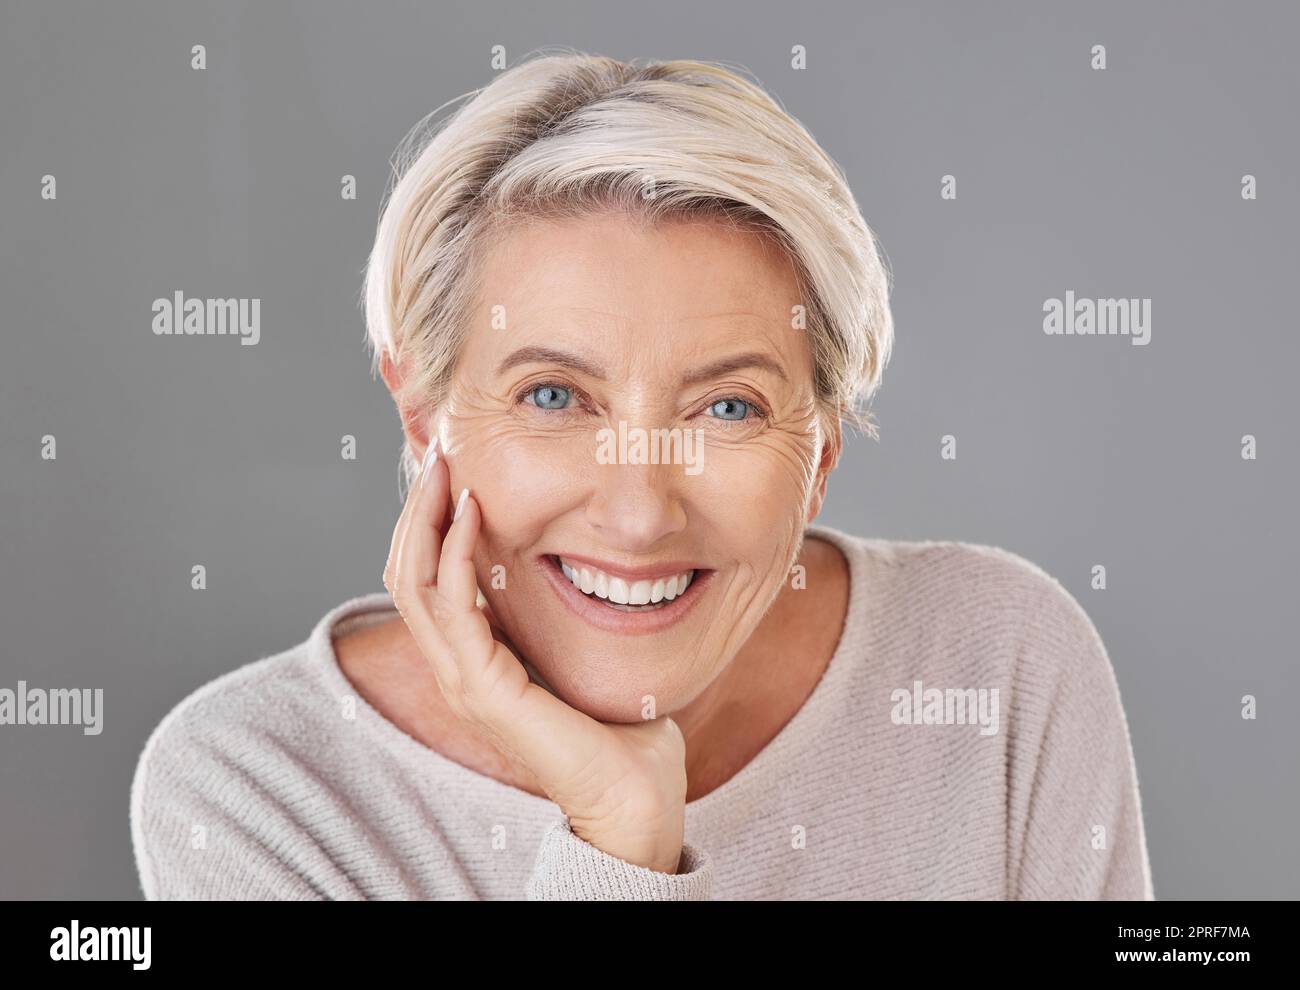 Hautpflege, Schönheit und glückliche Seniorin oder Gesichtsmodell mit gesunden Zähnen, das ein Lächeln auf einem Porträt im Studio mit Kopfschuss gibt. Zahn-, Wellness- und Schönheitschirurgie für ältere Frauen, um schön zu bleiben Stockfoto